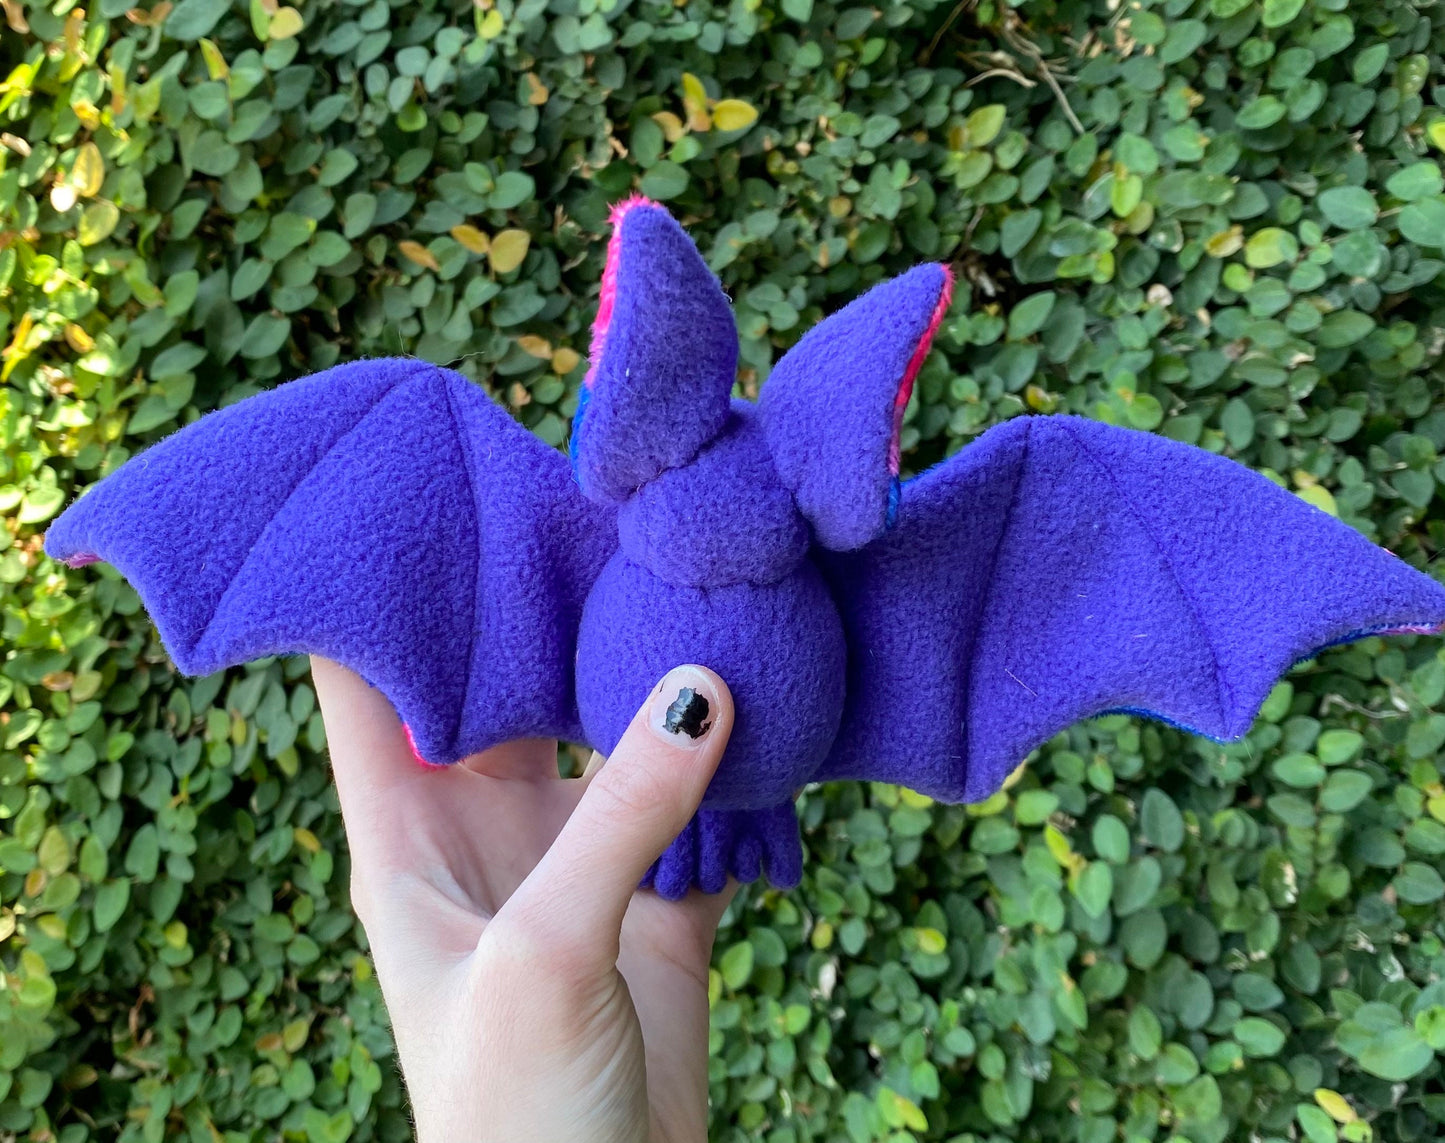 Bisexual Bat plushie